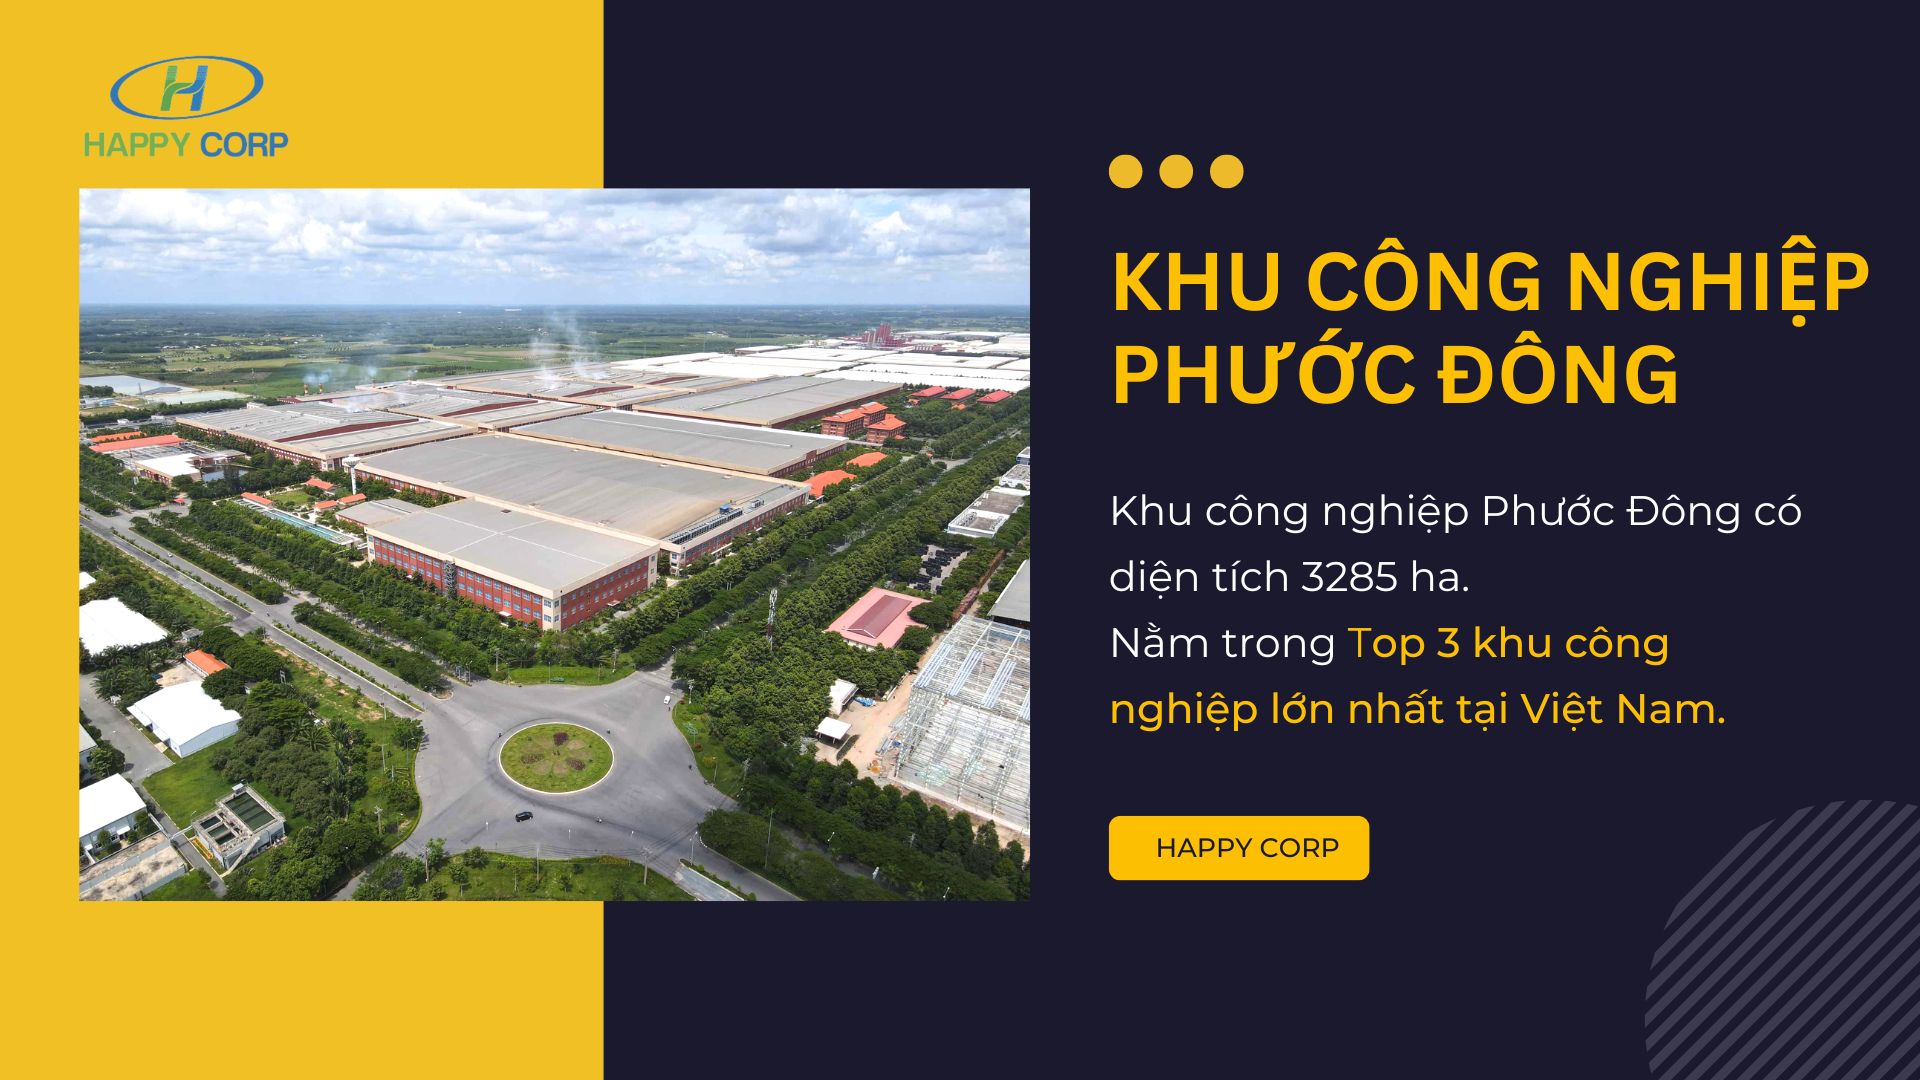 Khu công nghiệp Phước Đông - Top 3 khu công nghiệp lớn nhất tại Việt Nam